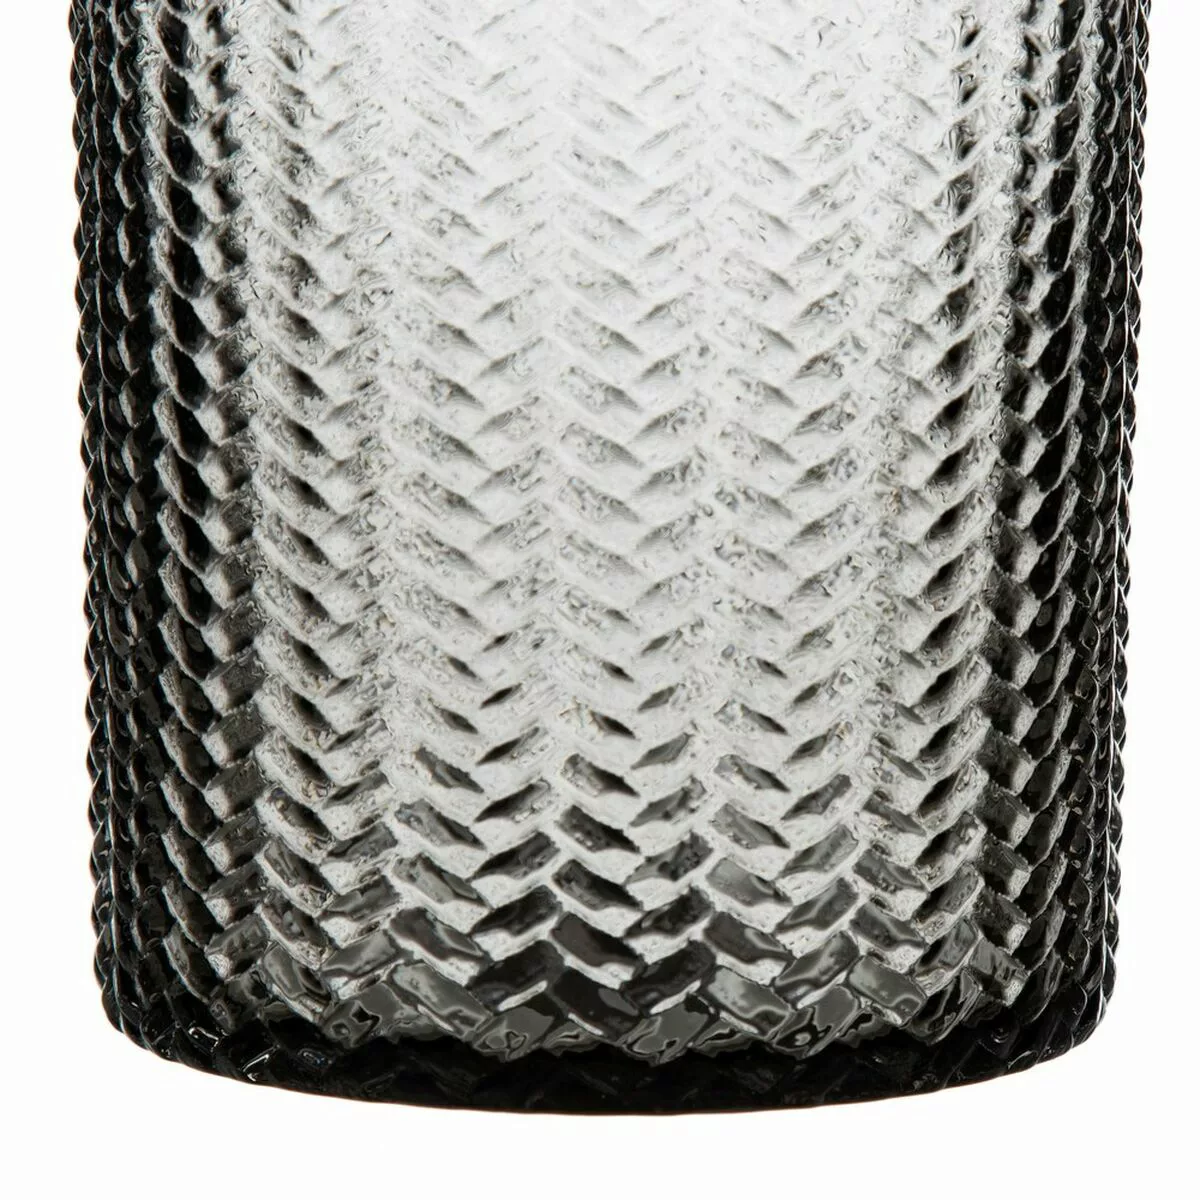 Vase 11,7 X 11,7 X 30 Cm Grau Glas günstig online kaufen